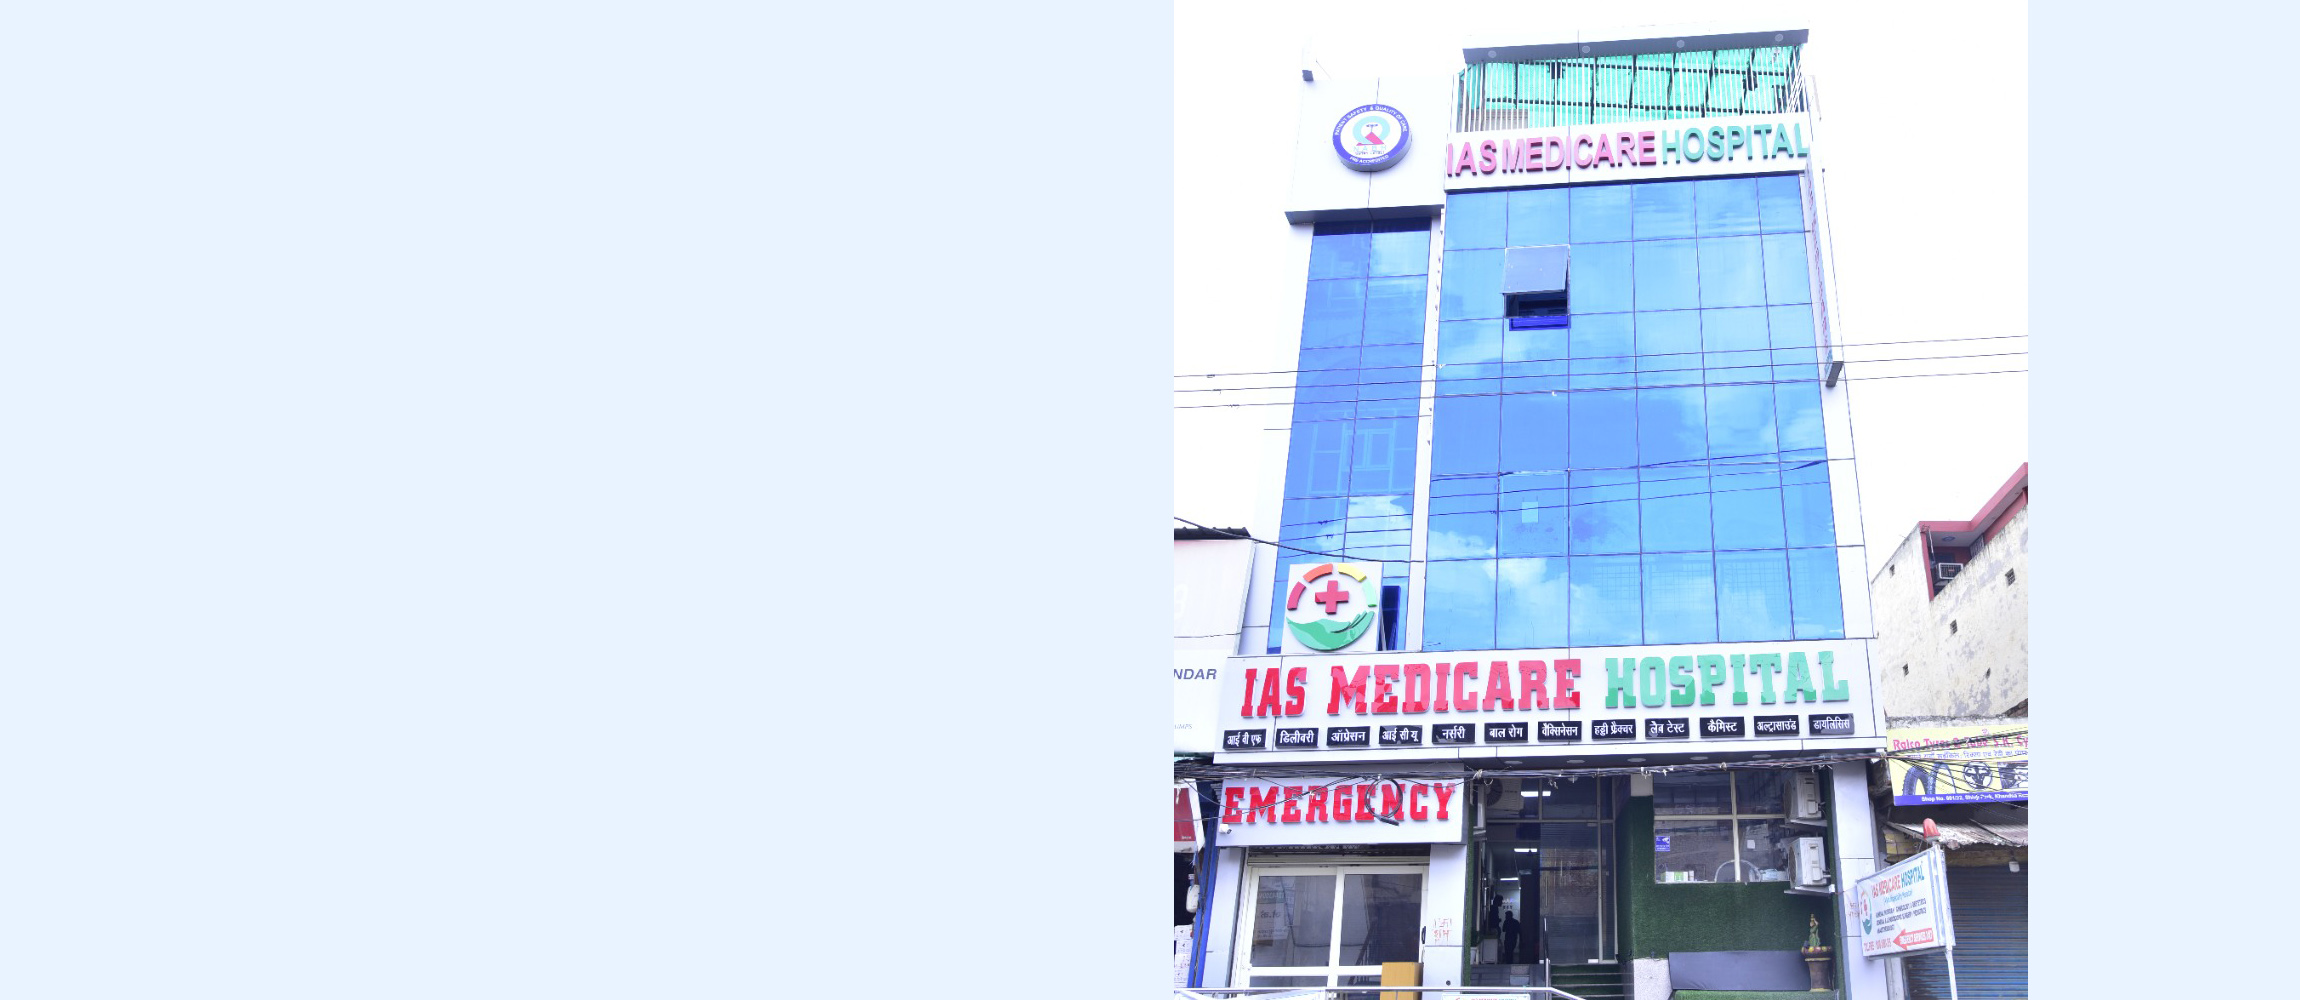 Best IAS Medicare Hospitals in India